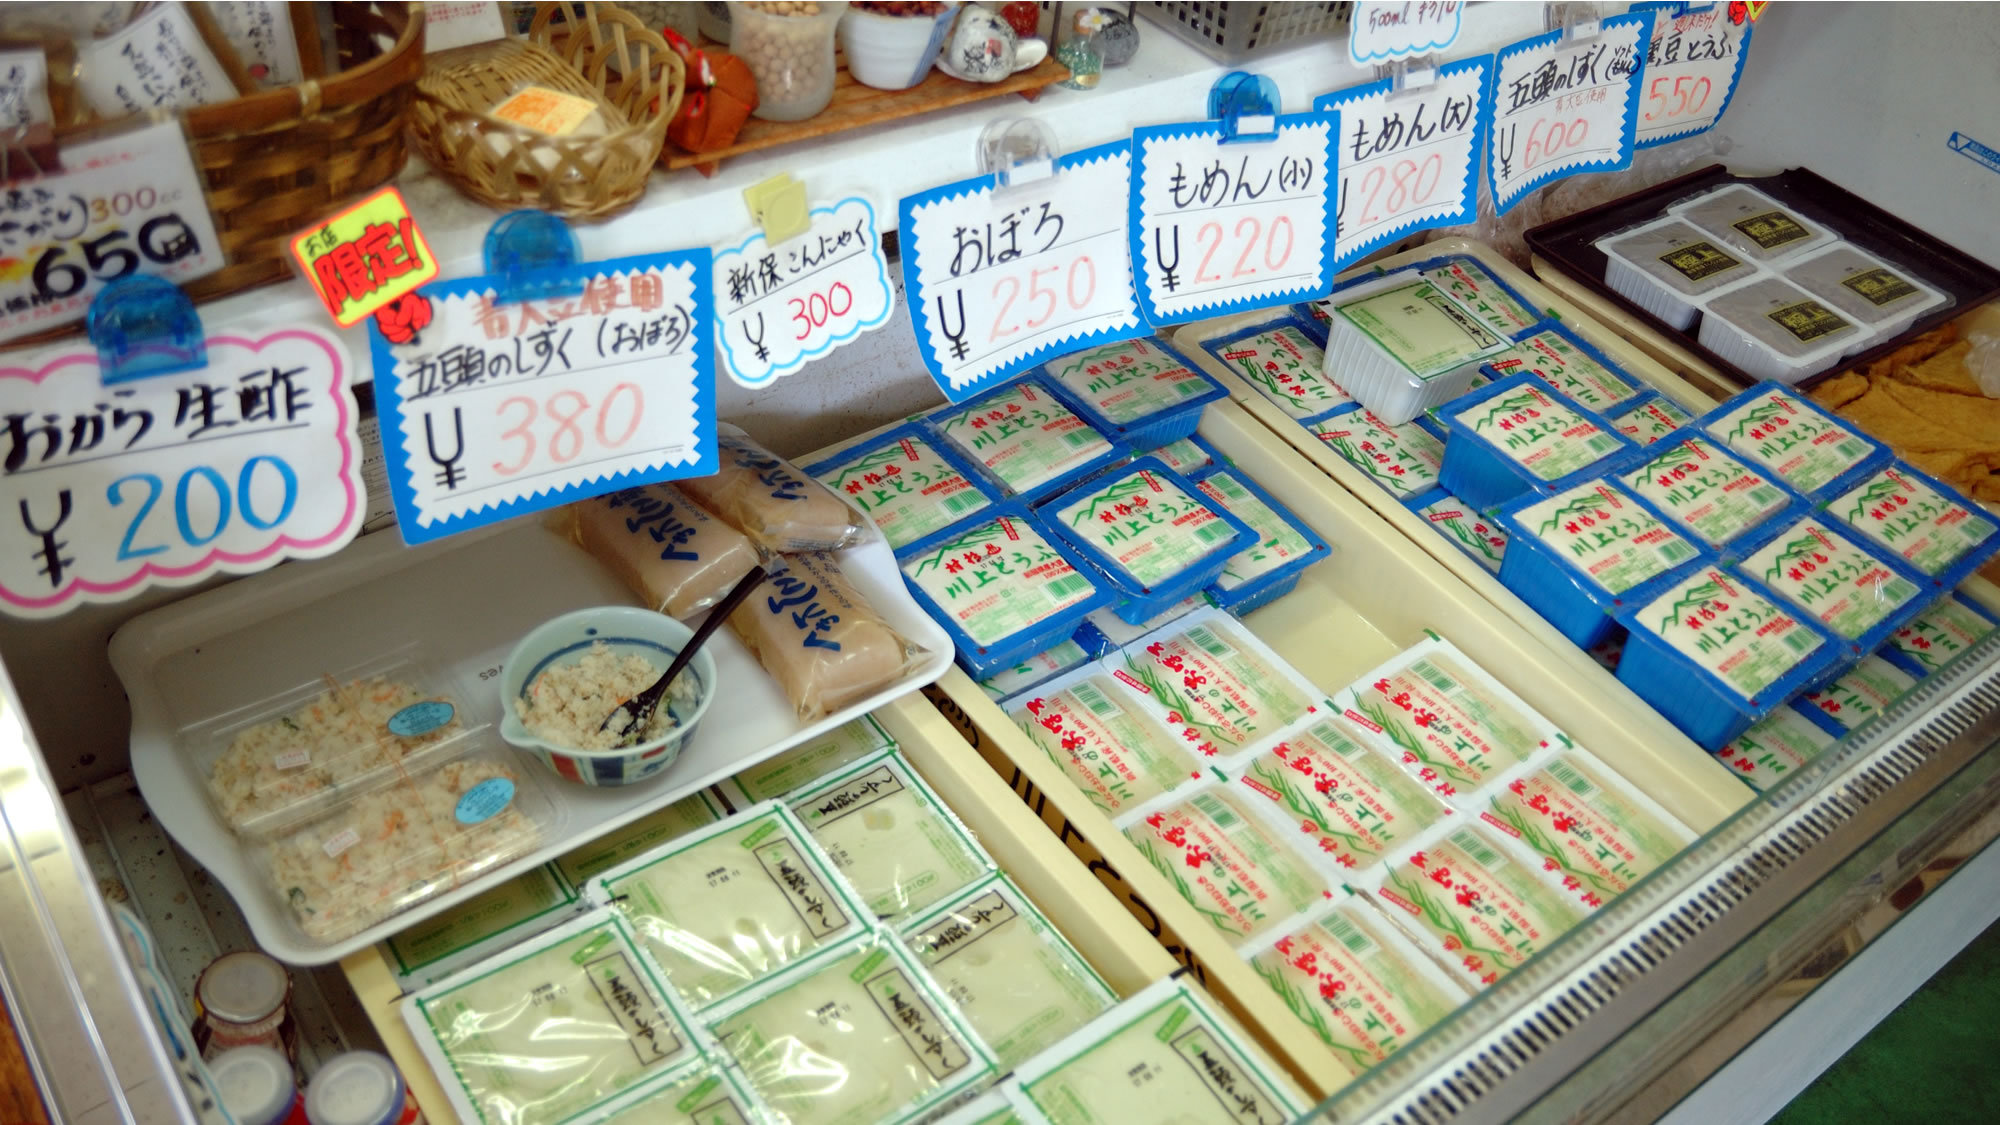 【村杉温泉 川上とうふ】地元で有名なお豆腐屋さんです。館内でもお土産注文をお受けしております。